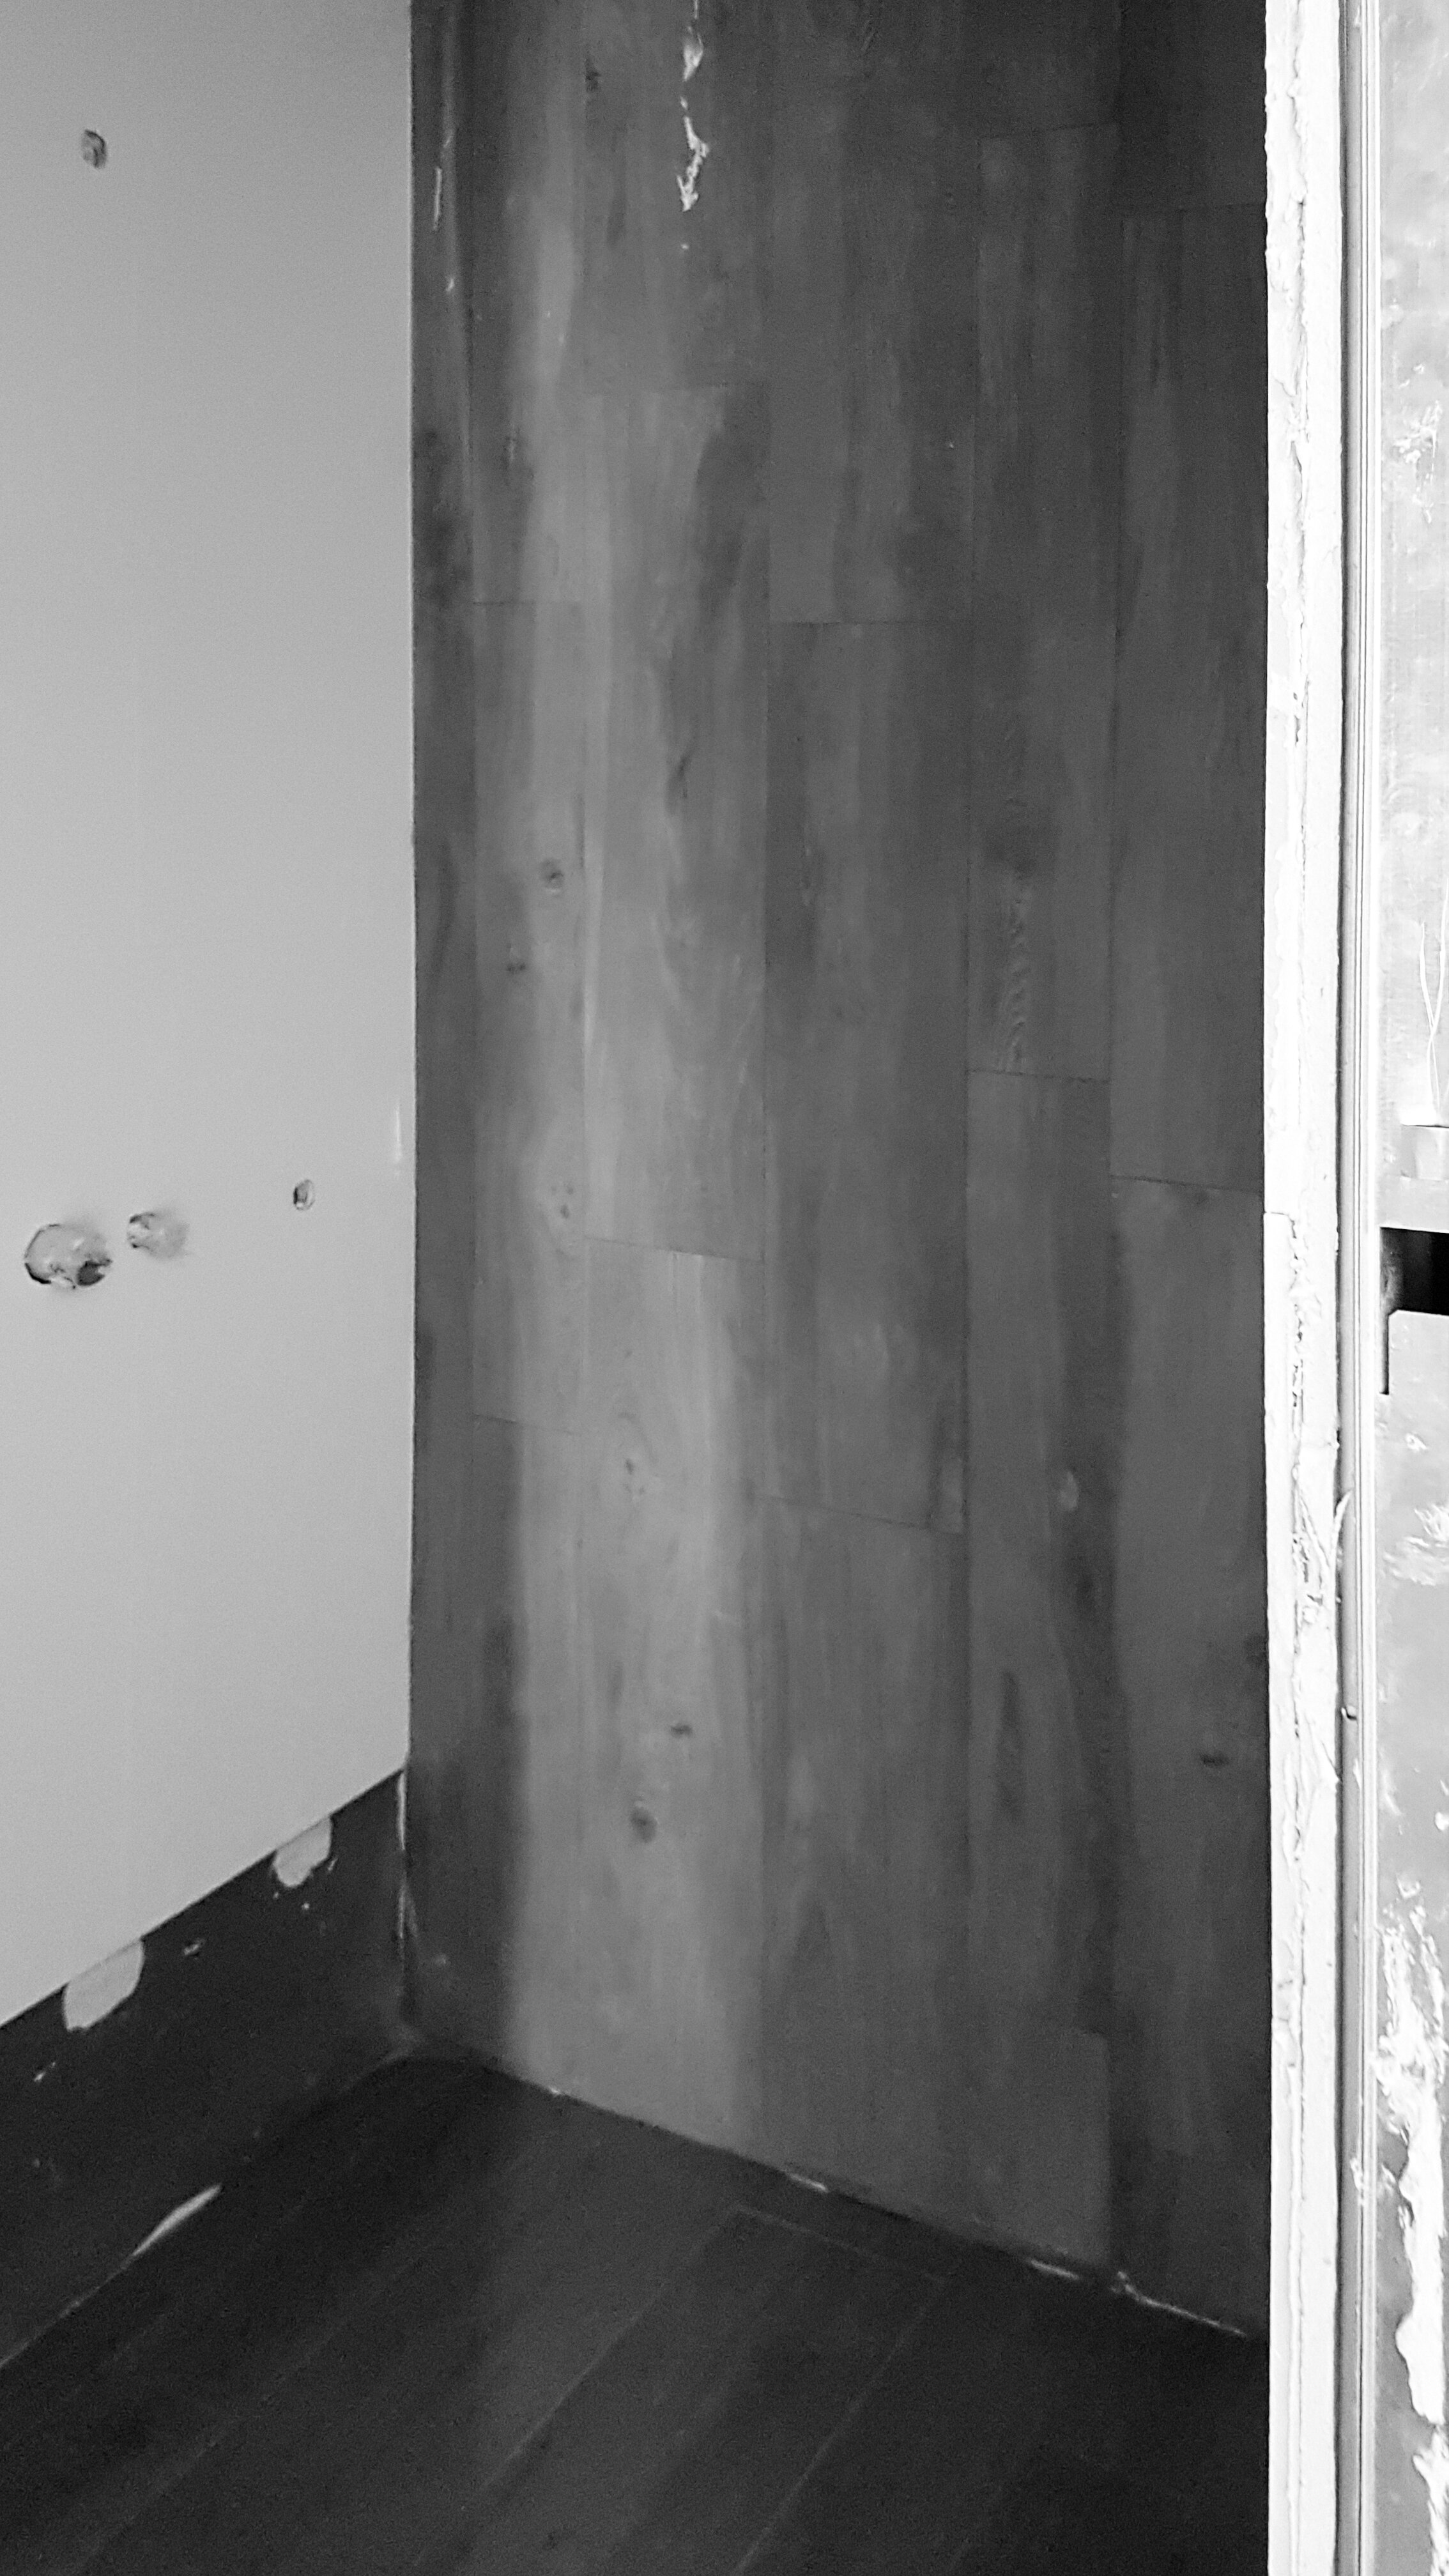 Apartamento Alcântara - eva evolotionary architecture - eva atelier - lisboa - remodelação (13).jpg